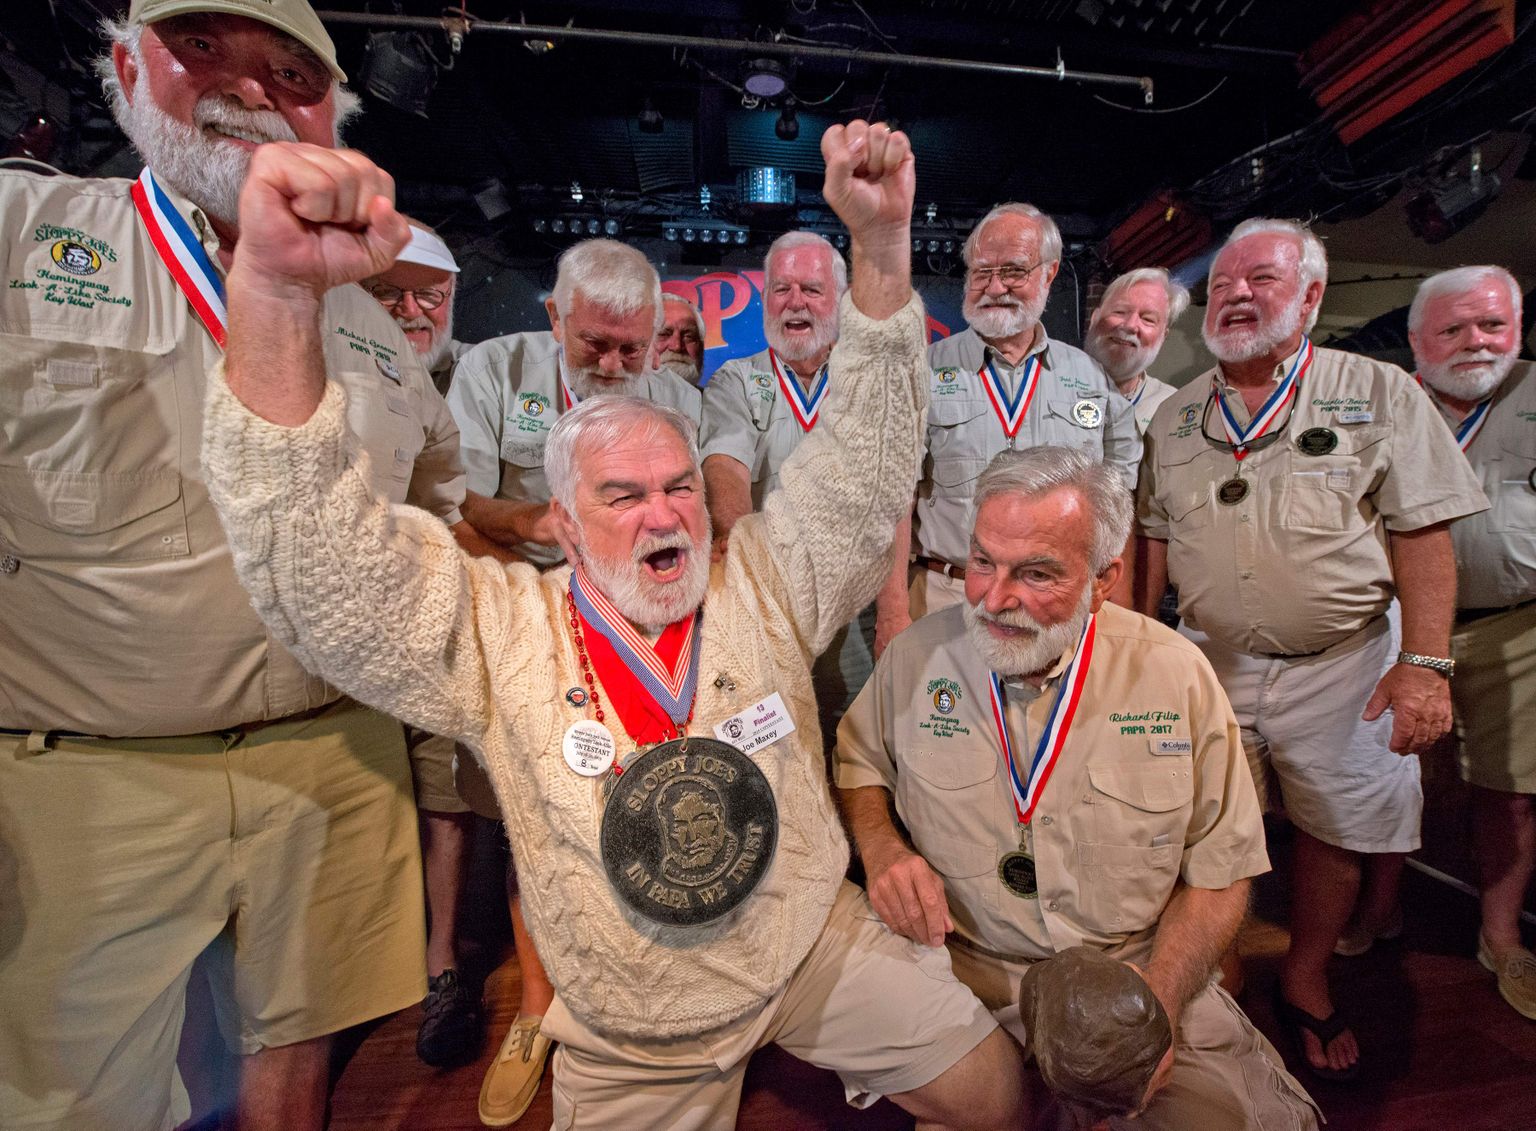 Igaaastane Hemingway teisikute võistlus Floridas 2019. aastal.